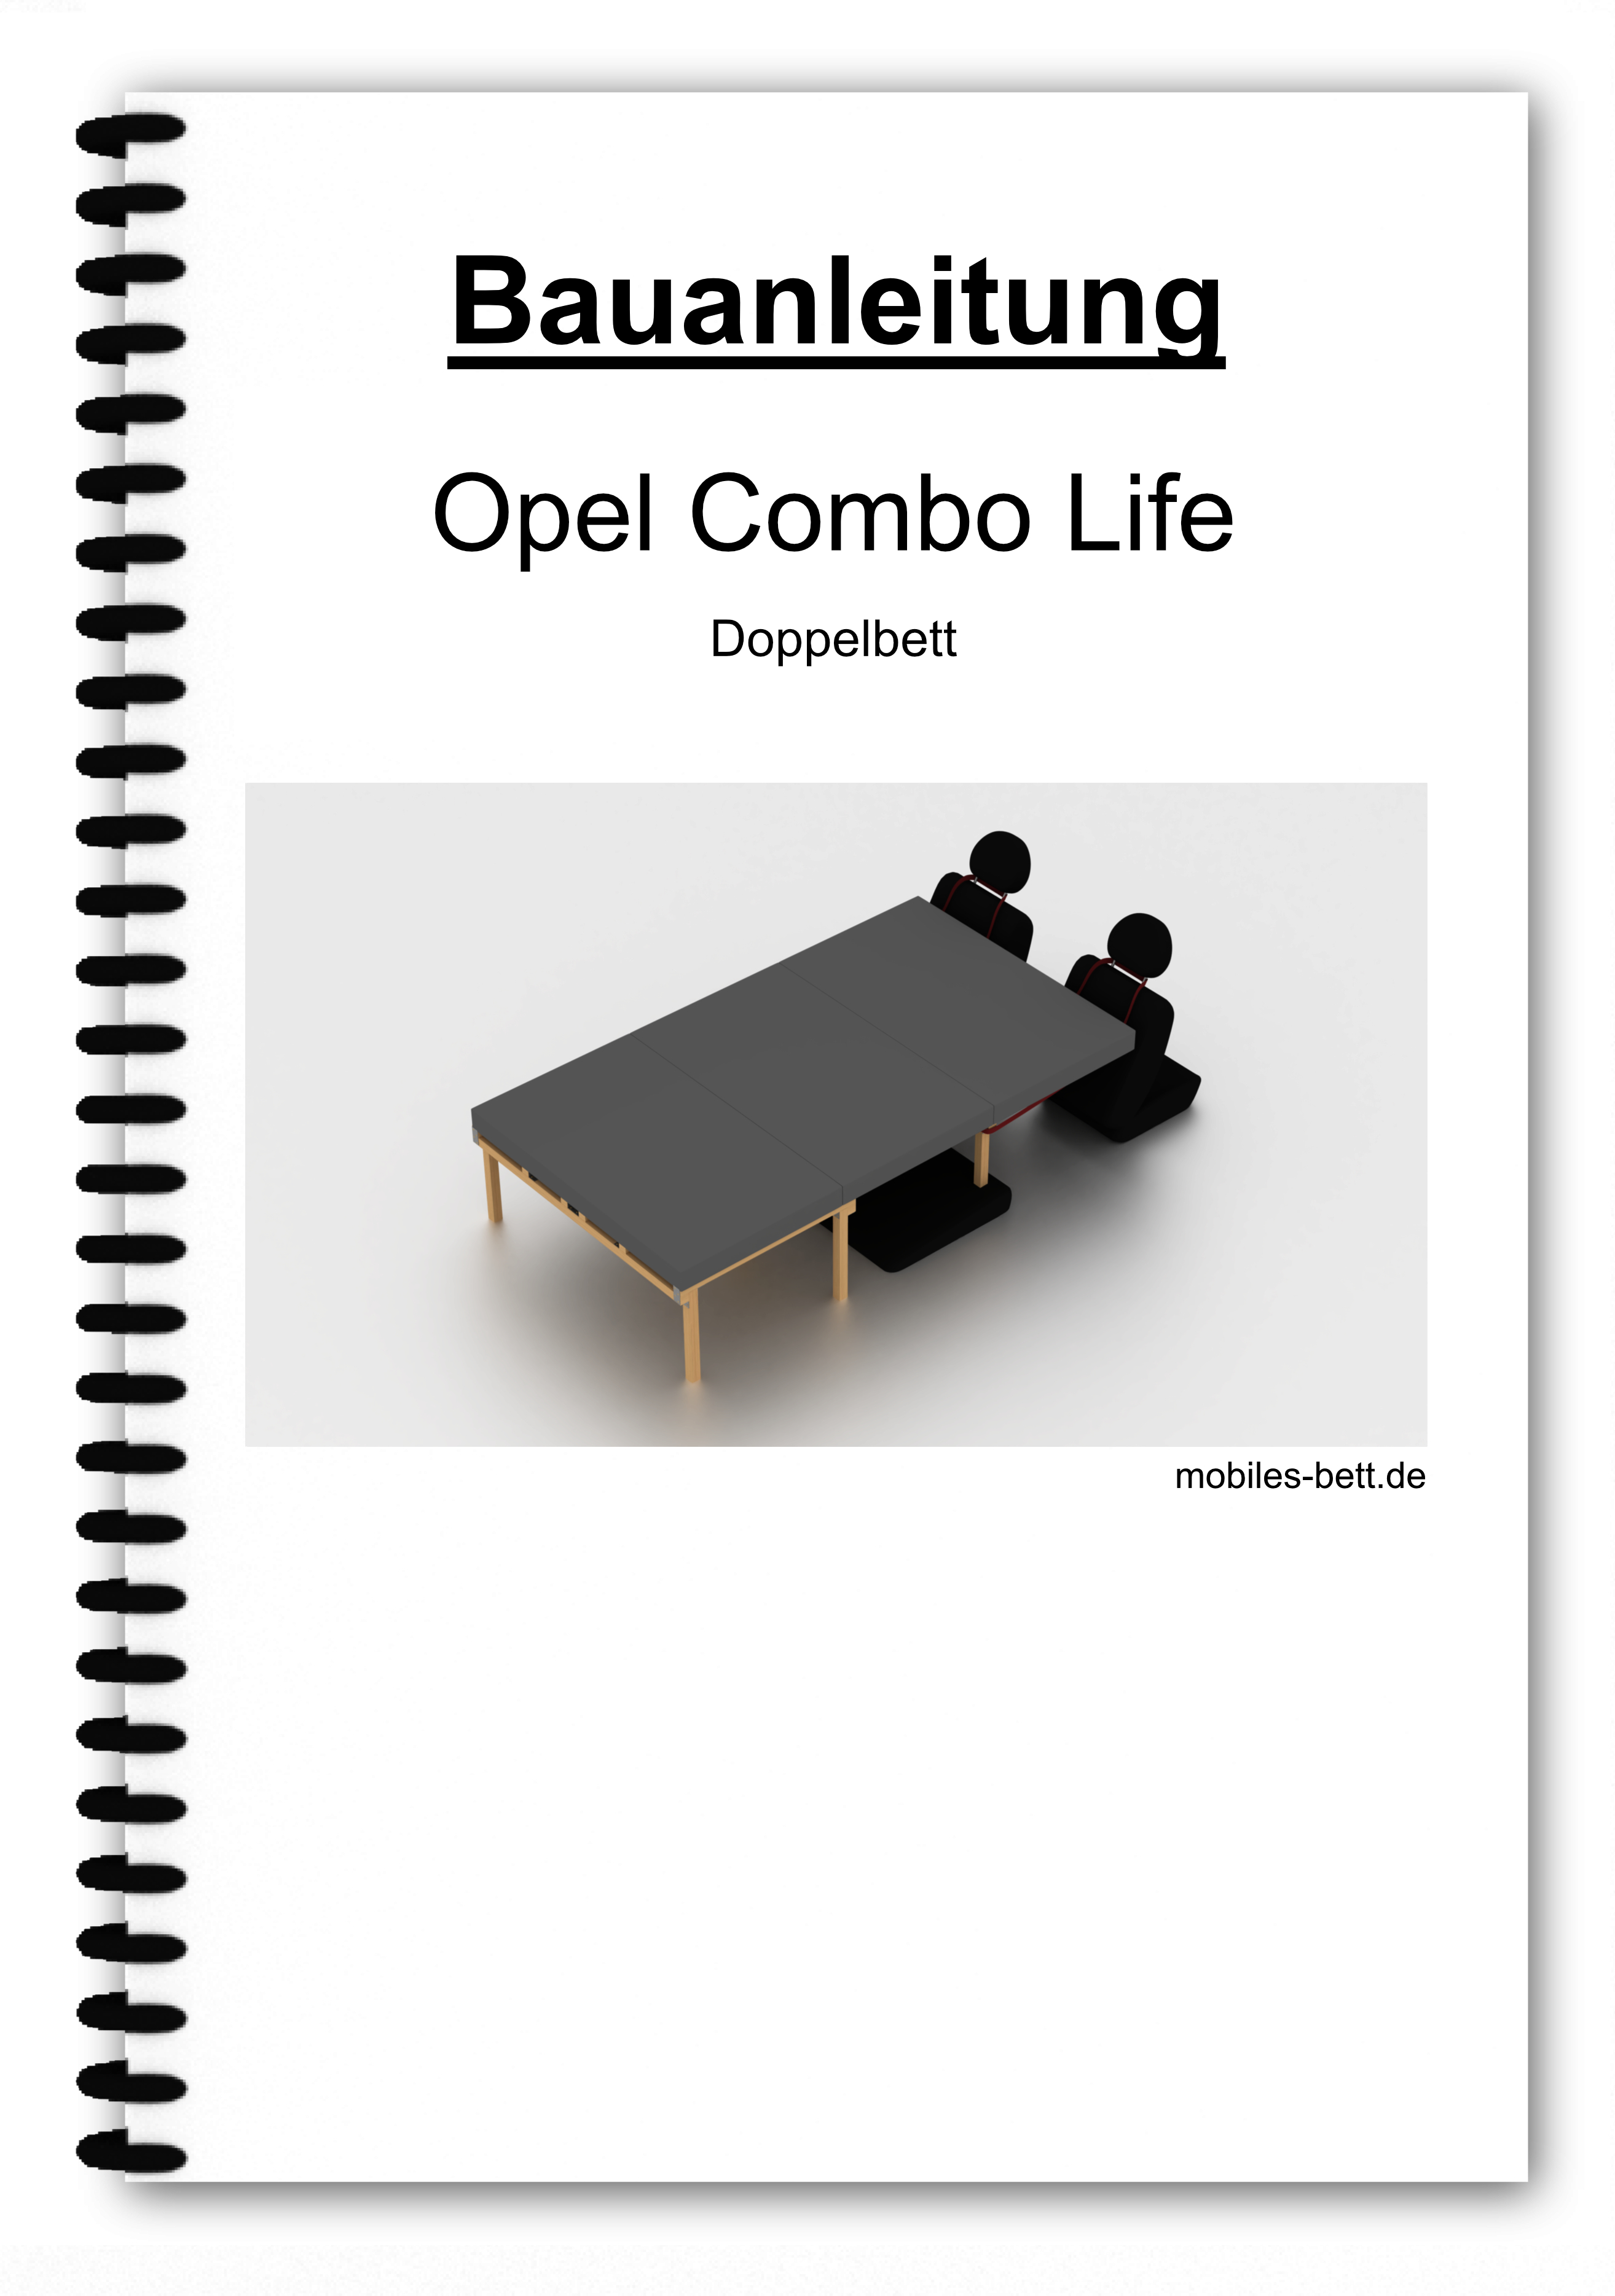 Bauanleitung - Opel Combo Life Kombibett